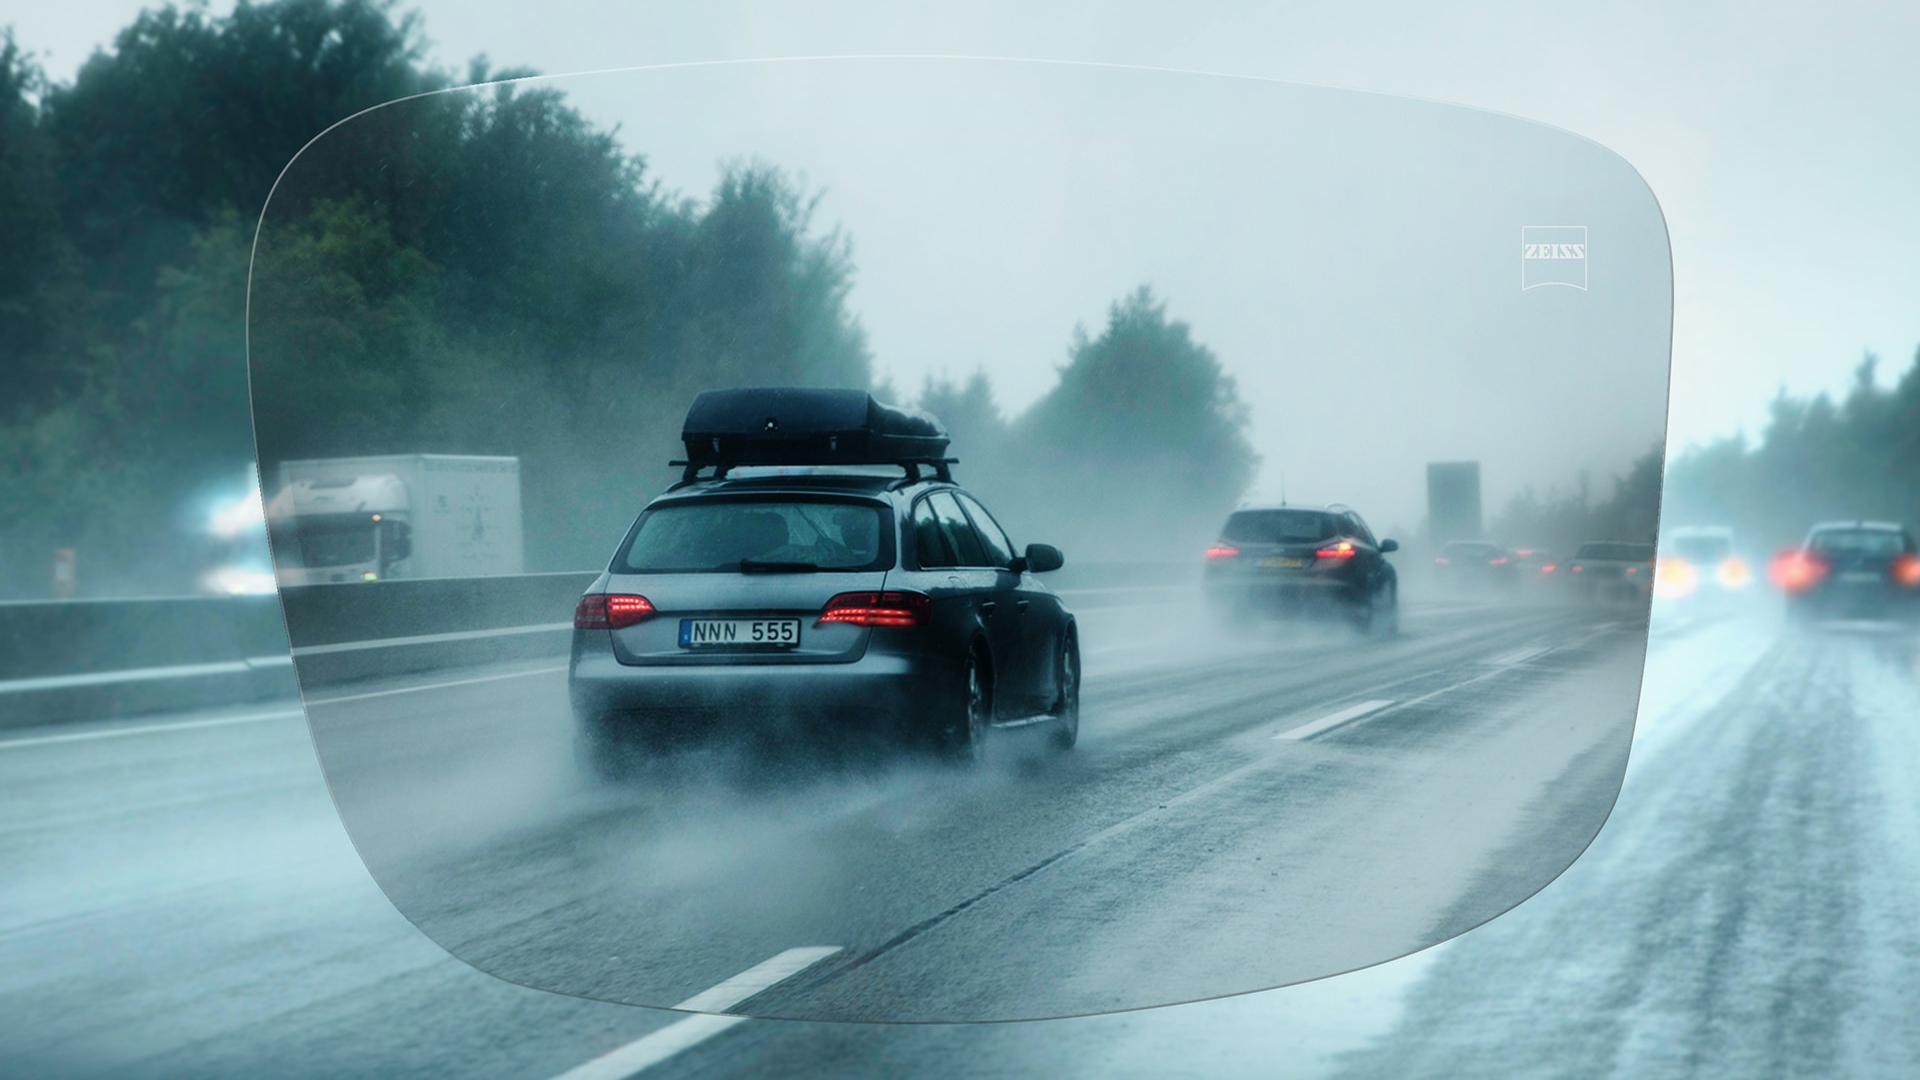 Pohľad cez jednoohniskové šošovky ZEISS DriveSafe na diaľnici v daždivom dni 